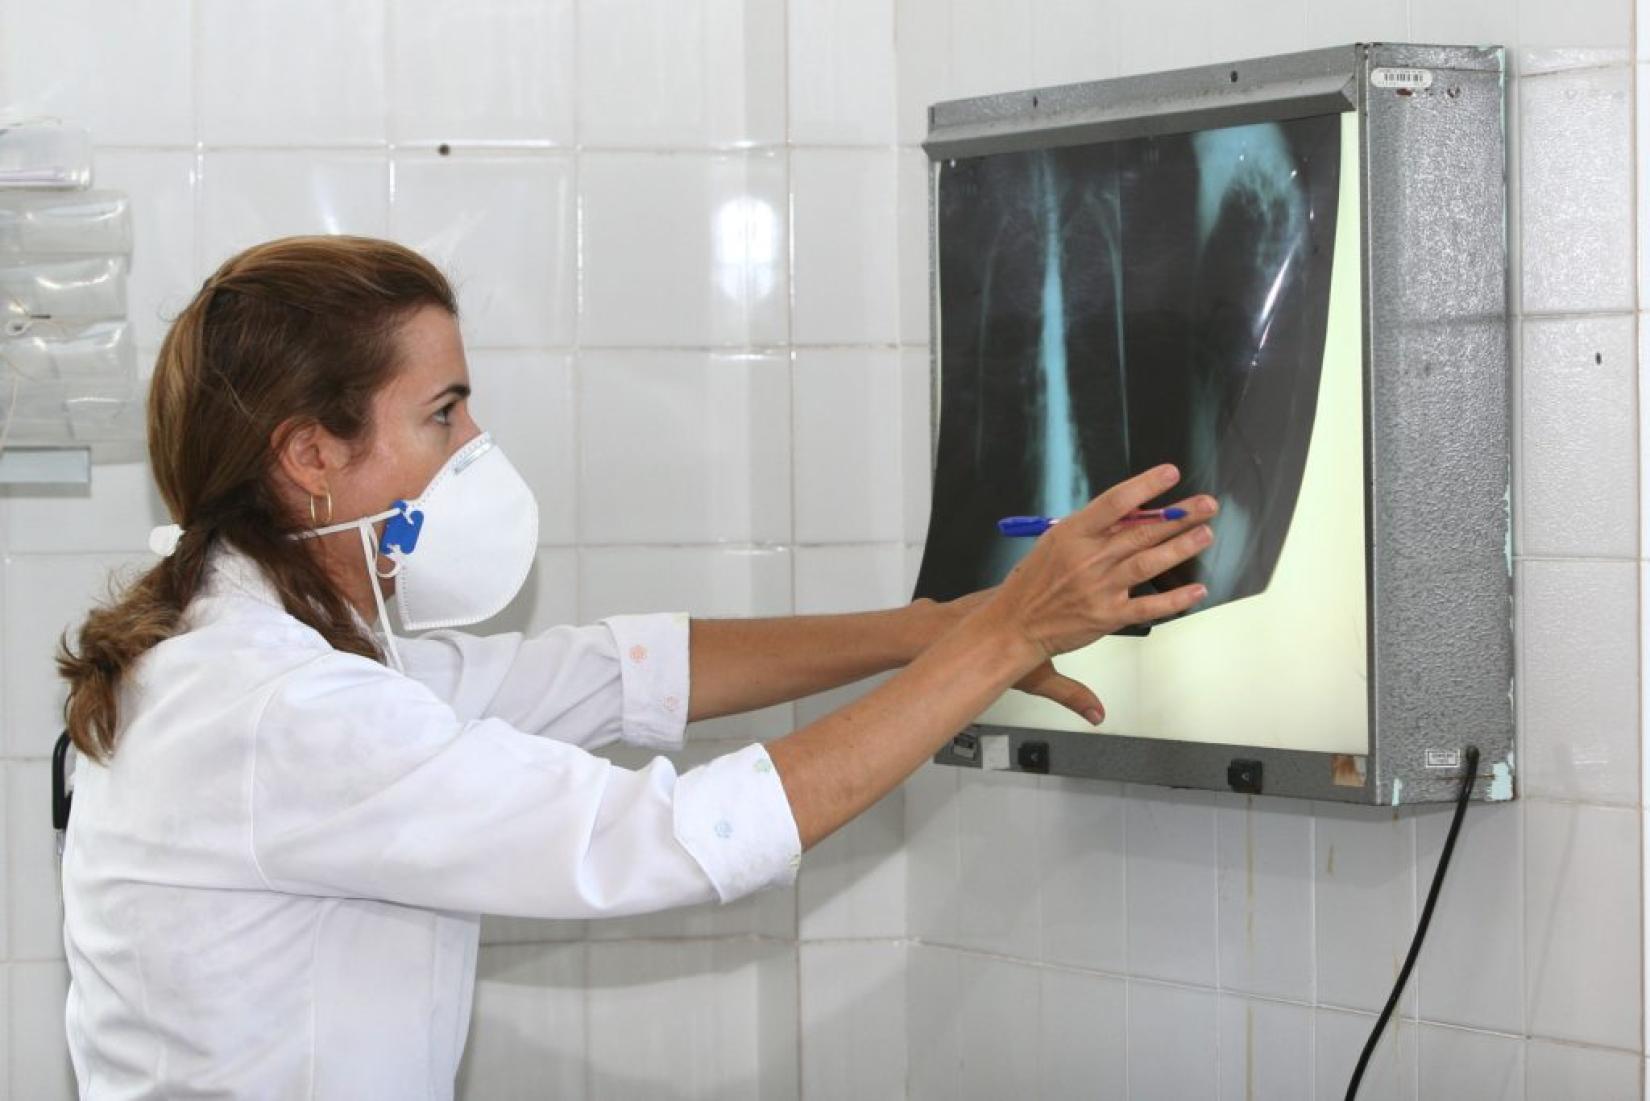 Médica analisa exame para eventual diagnóstico de tuberculose. Foto: AGECOM/Carol Garcia